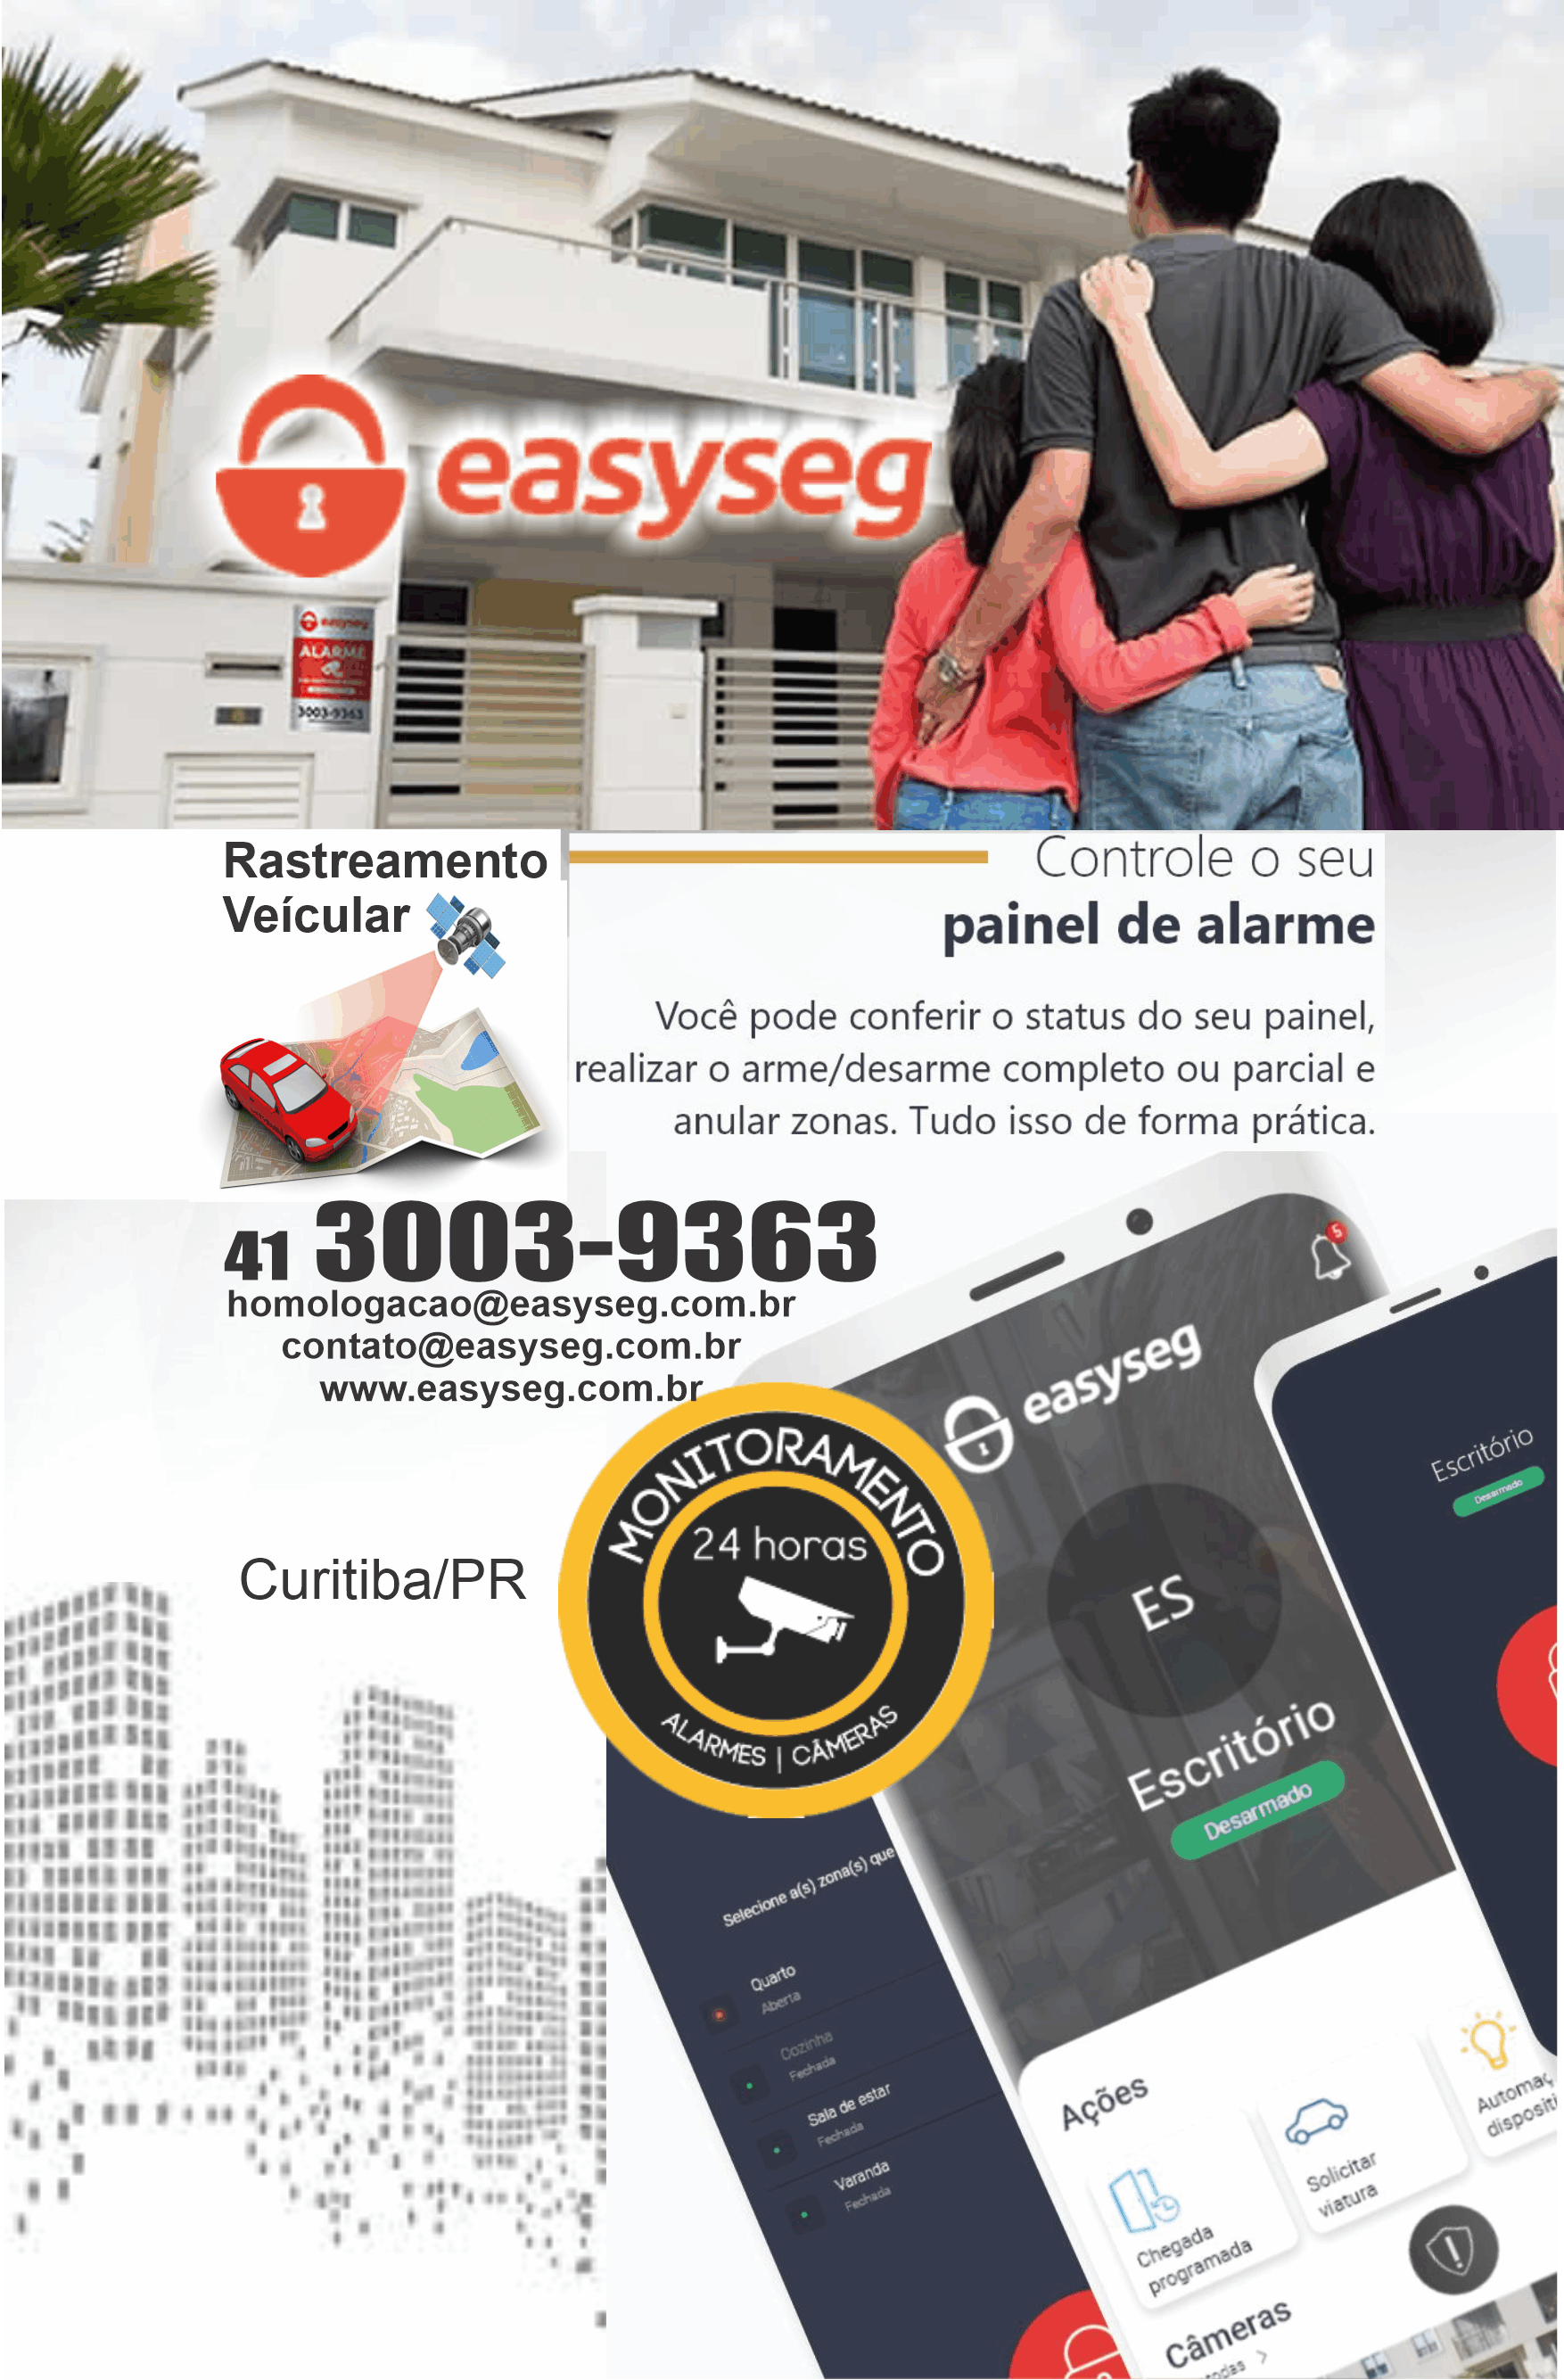  Easyseg Segurança e Monitoramento Eletrônico      Fones: (41)3003-9363 /